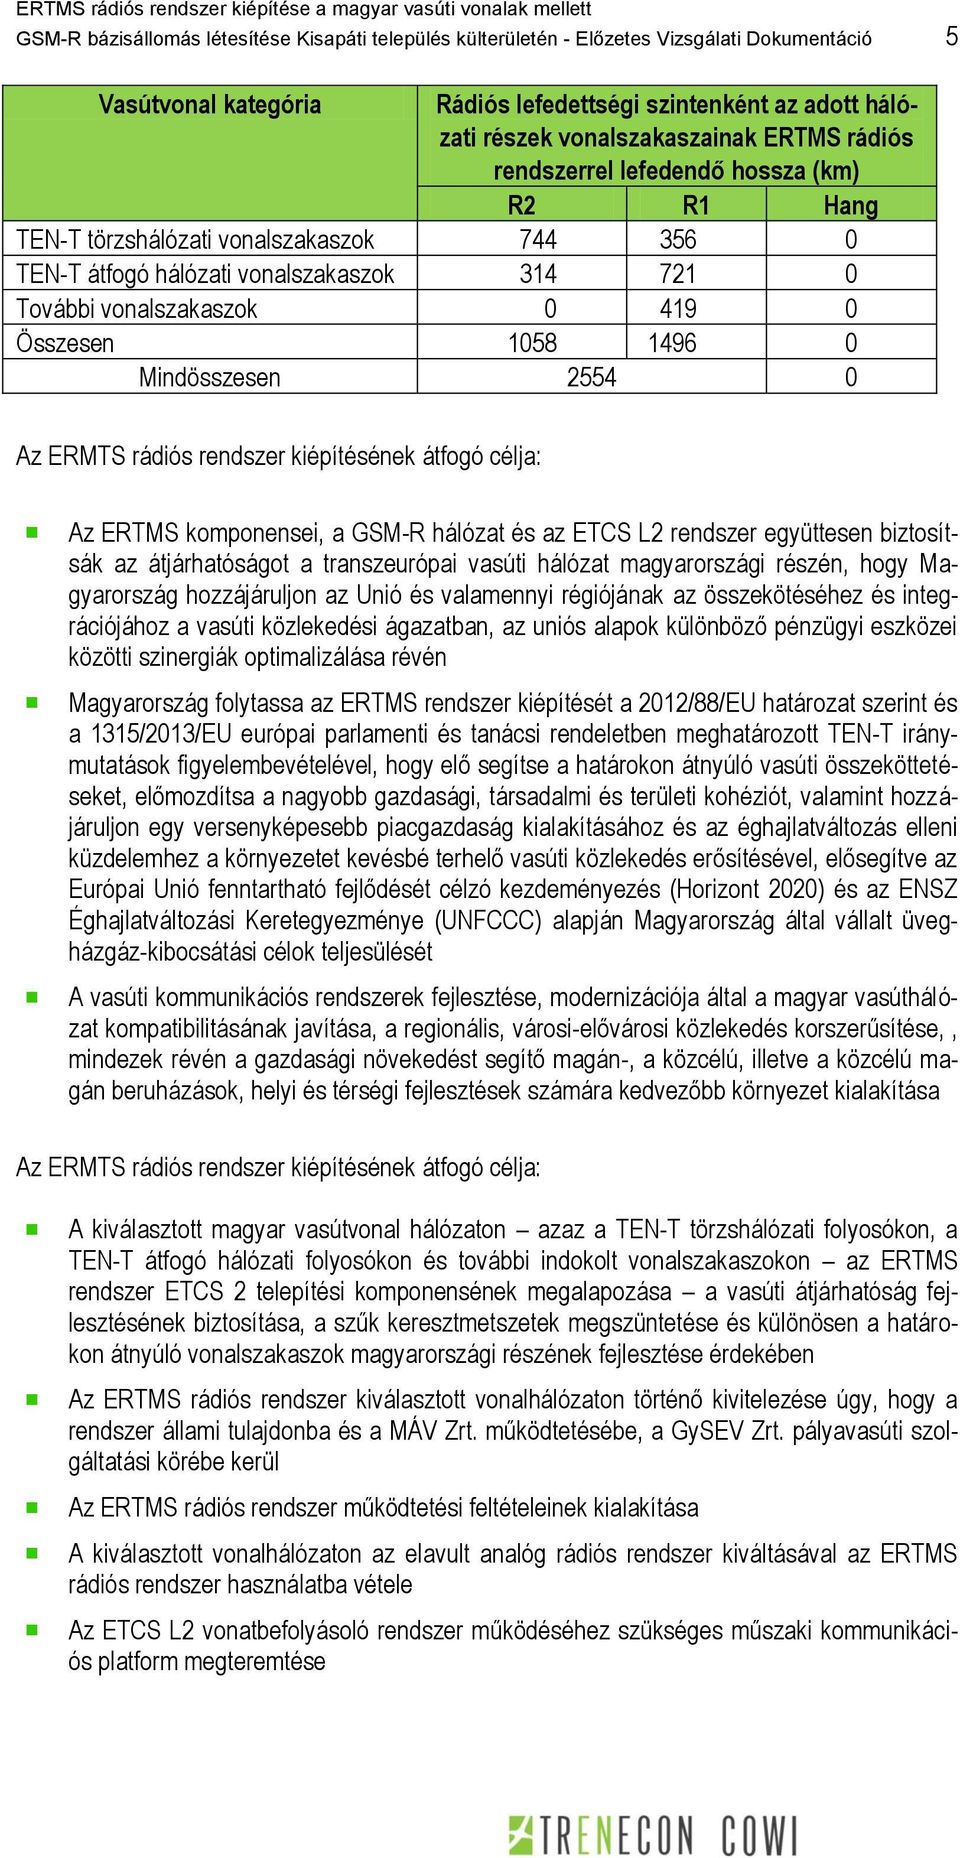 0 Mindösszesen 2554 0 Az ERMTS rádiós rendszer kiépítésének átfogó célja: Az ERTMS komponensei, a GSM-R hálózat és az ETCS L2 rendszer együttesen biztosítsák az átjárhatóságot a transzeurópai vasúti